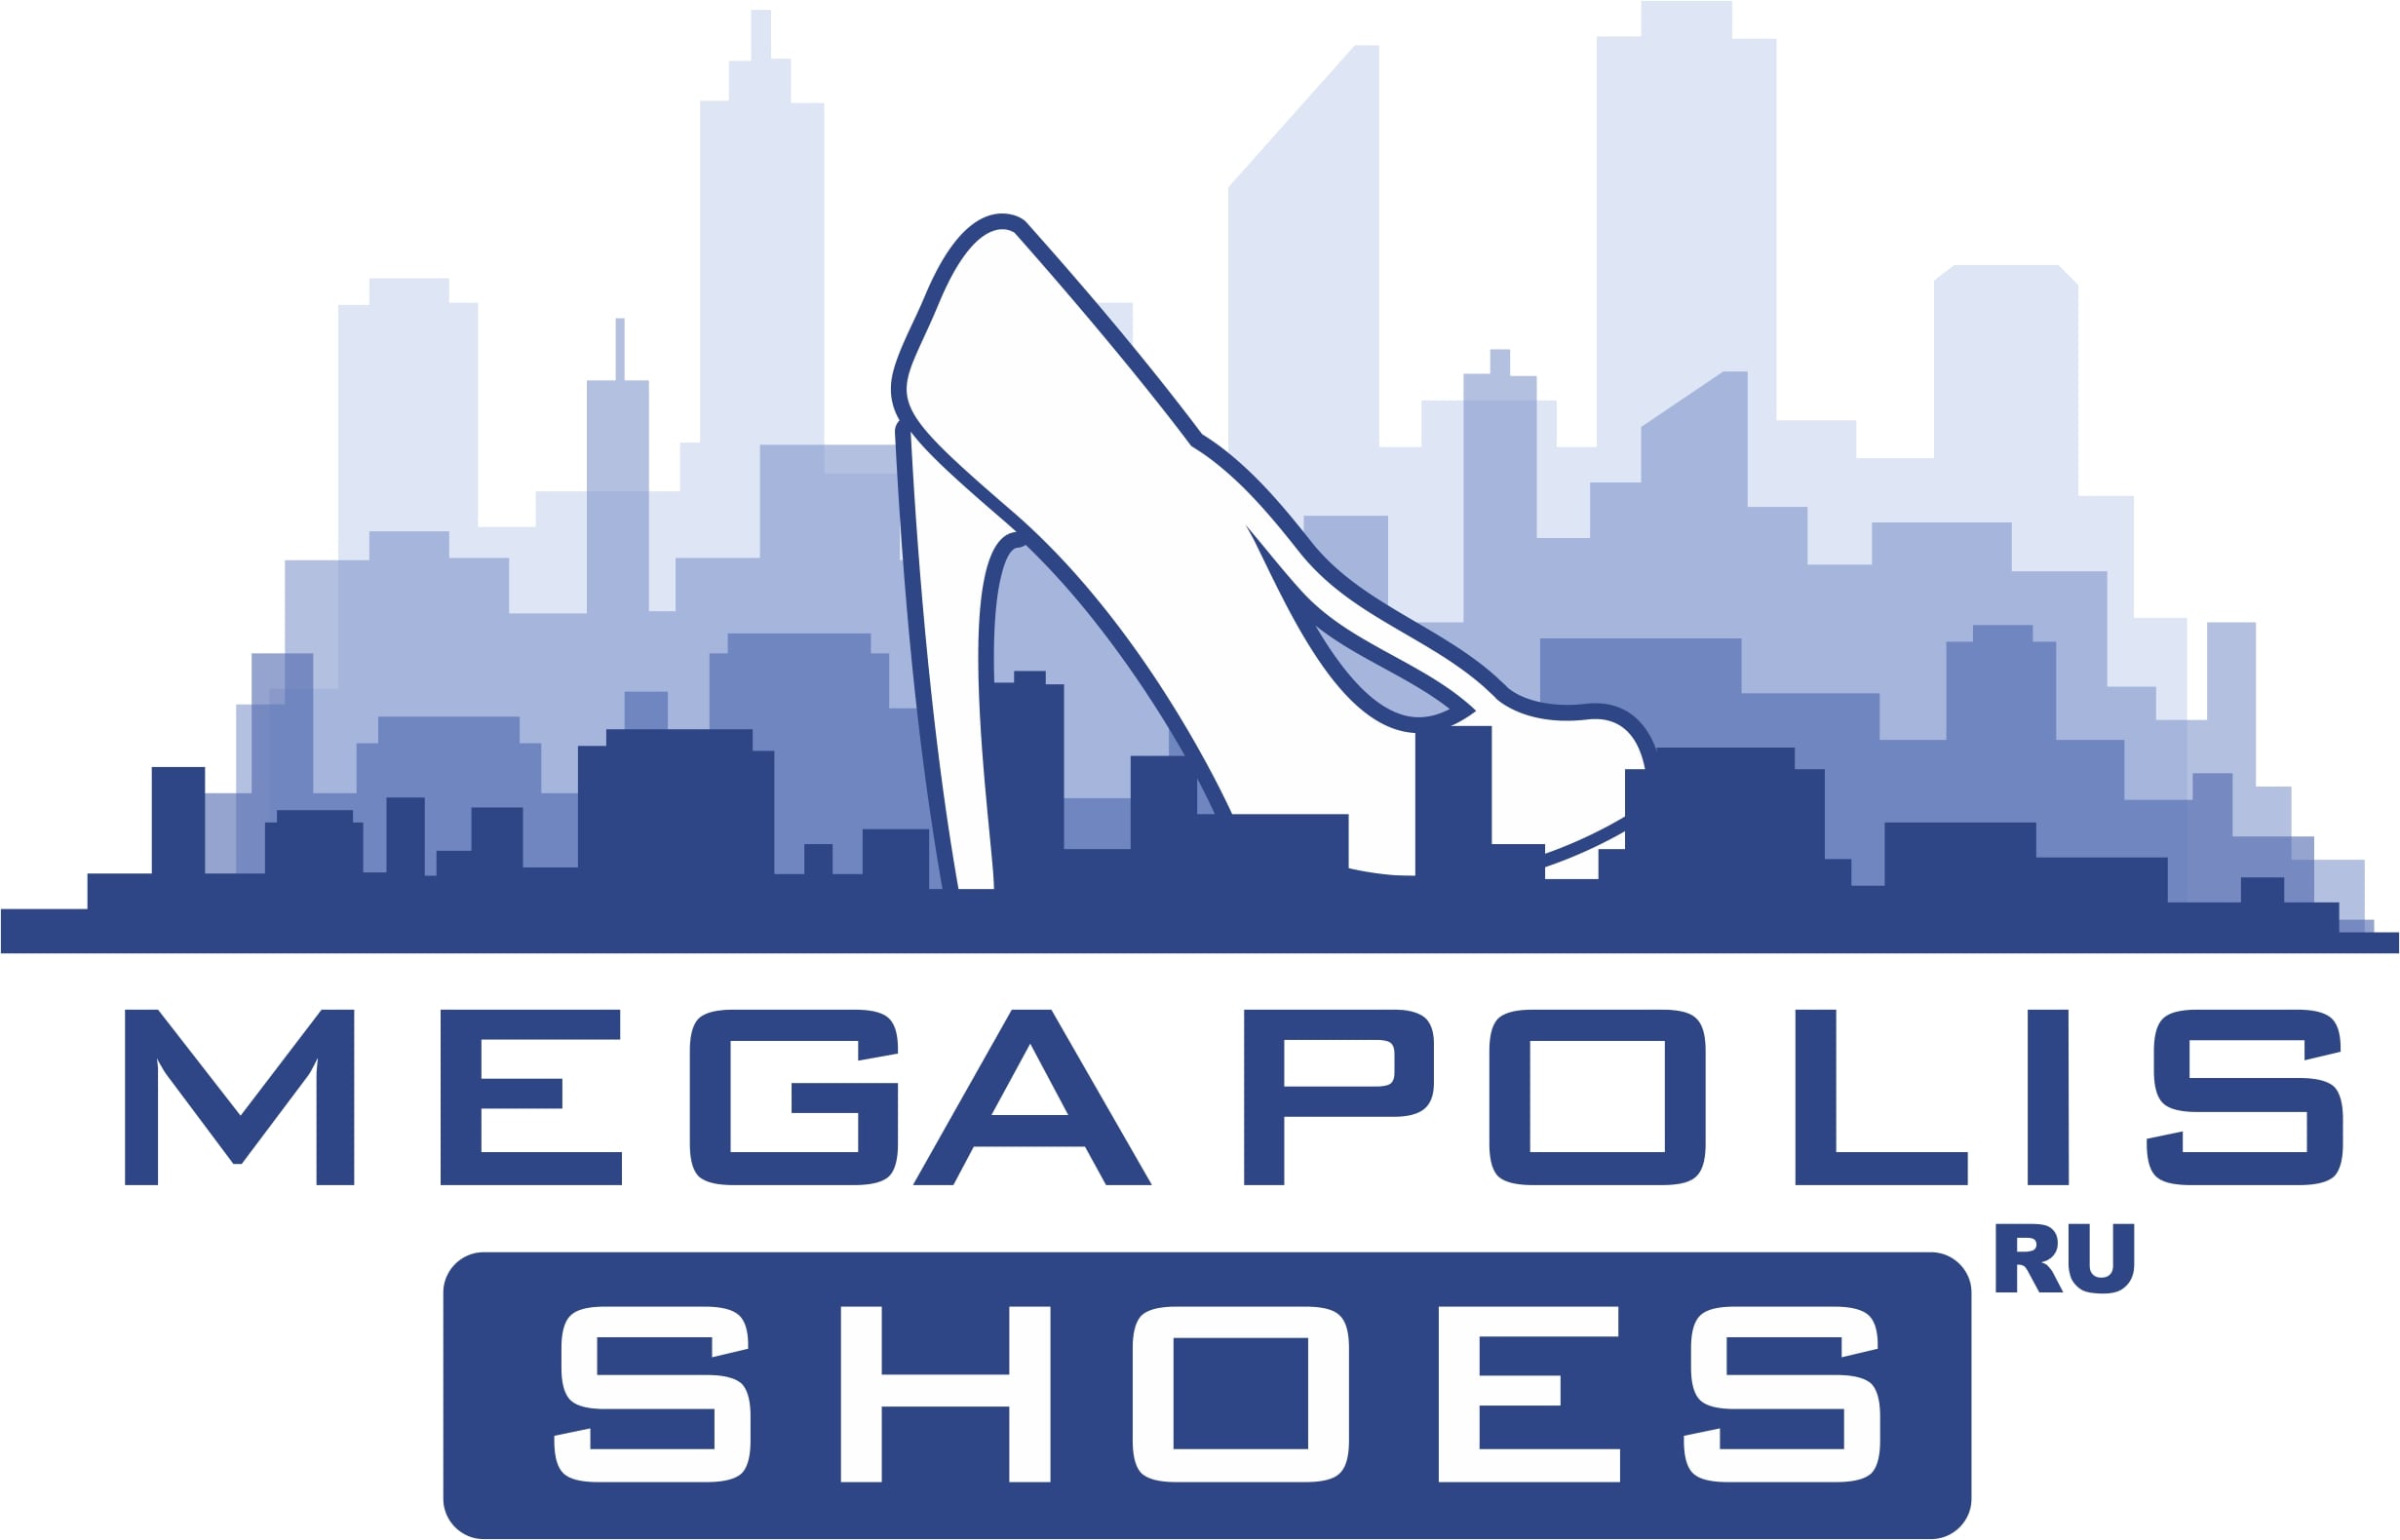 Megapolis shoes